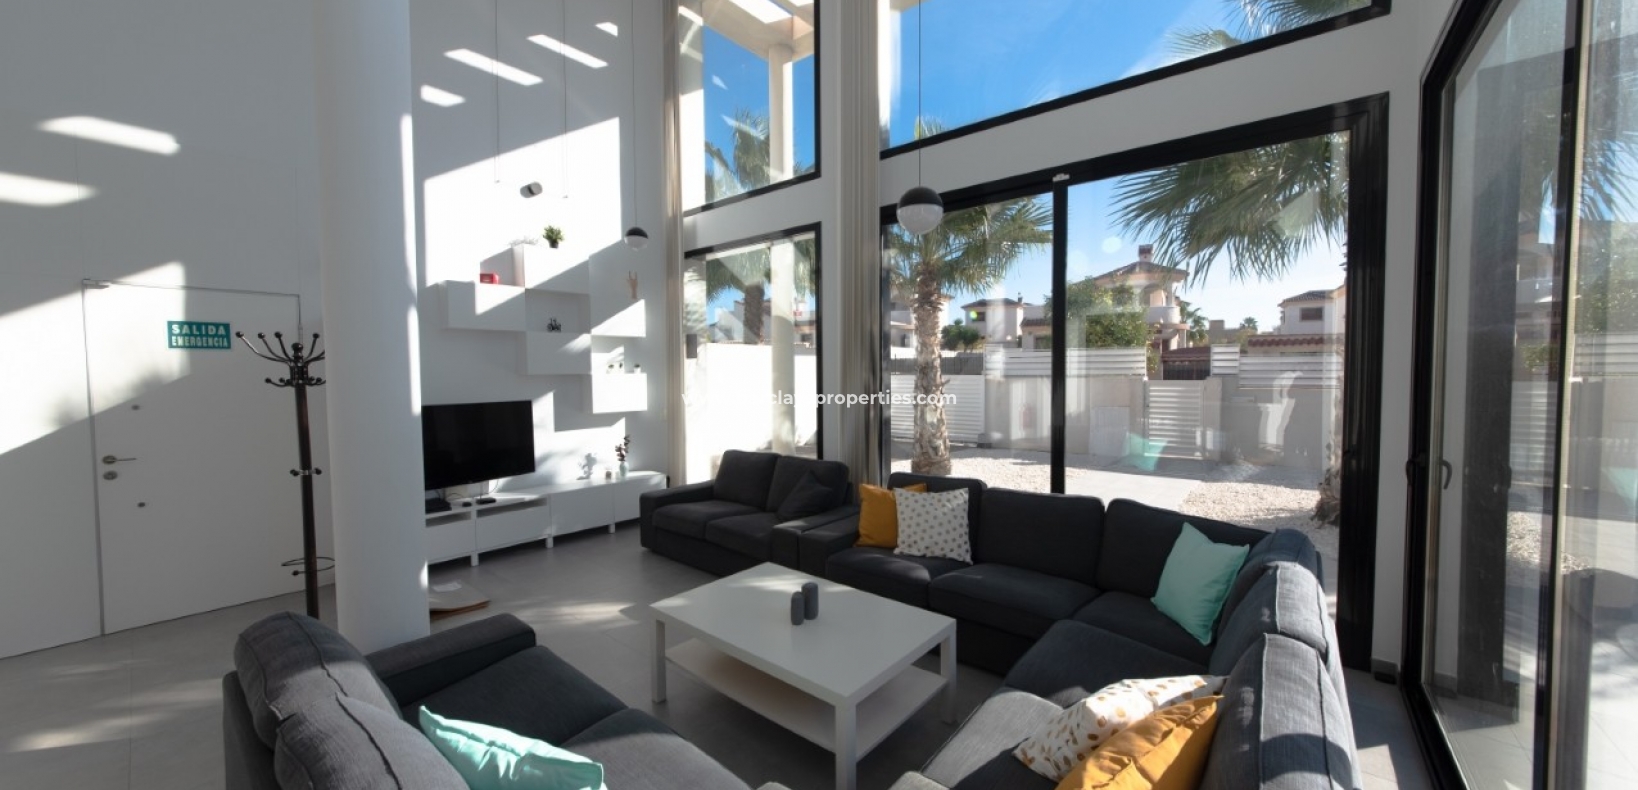 Woonkamer - Nieuwbouw villa te koop in Urb La Marina